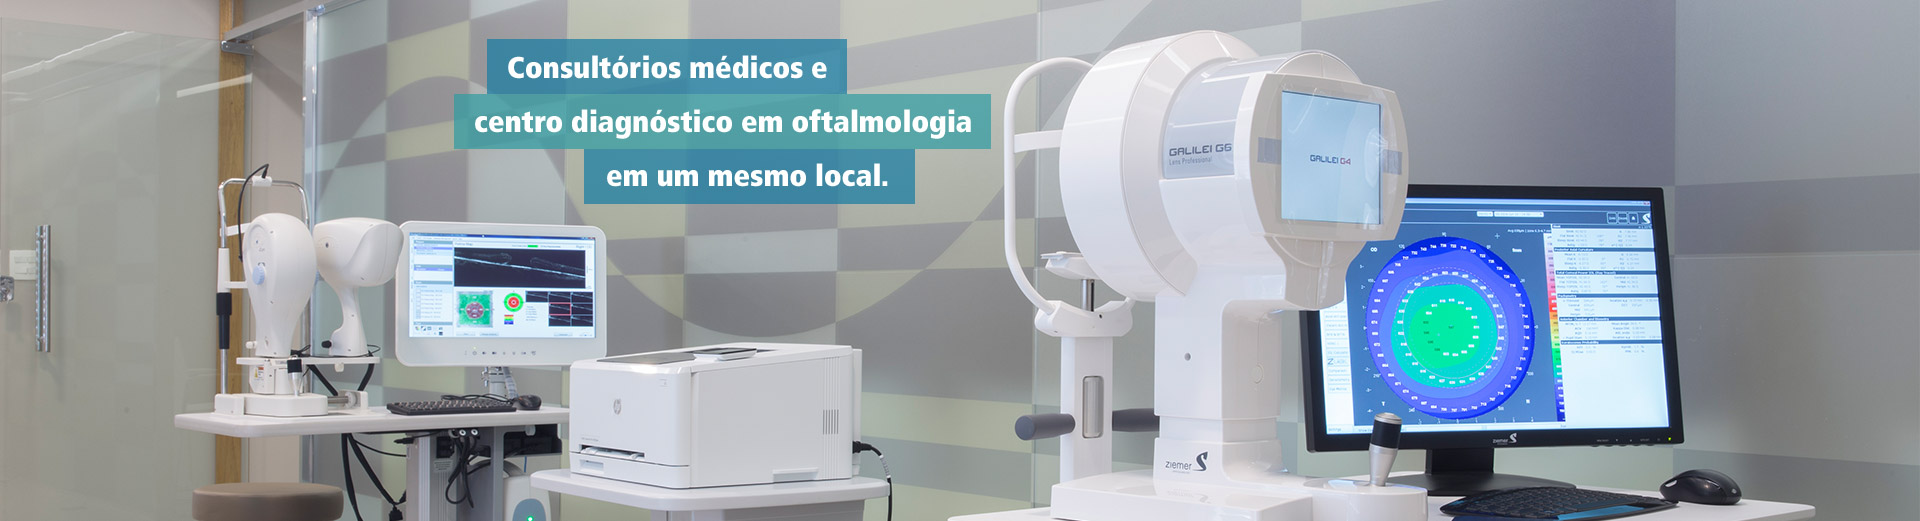 Consultórios médicos e centro diagnóstico em oftalmologia em um mesmo local